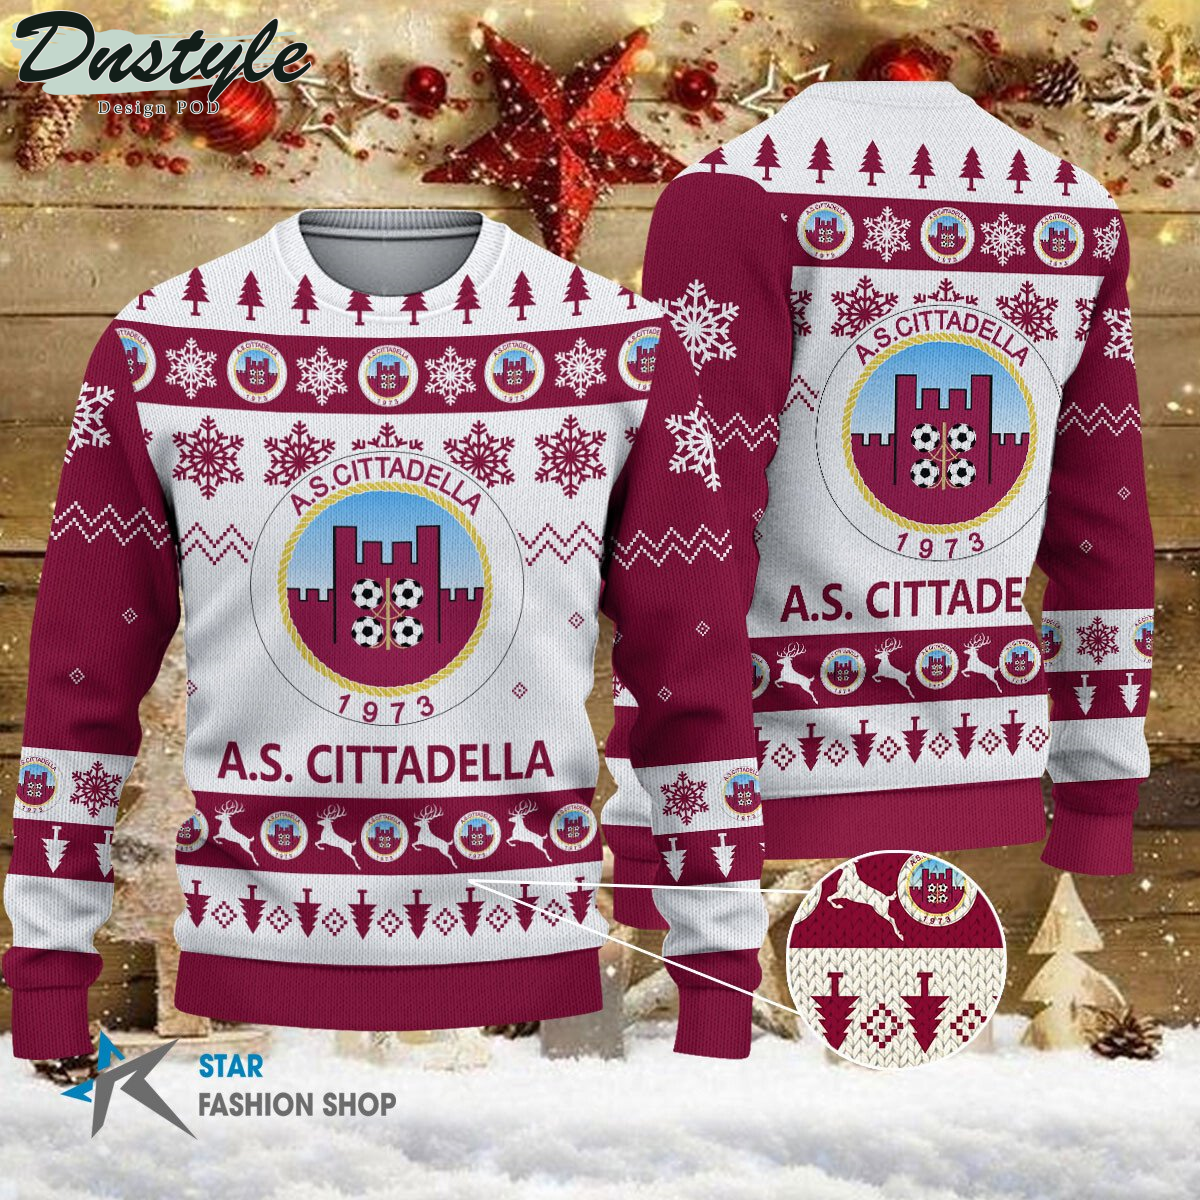 Spezia Calcio ugly christmas sweater